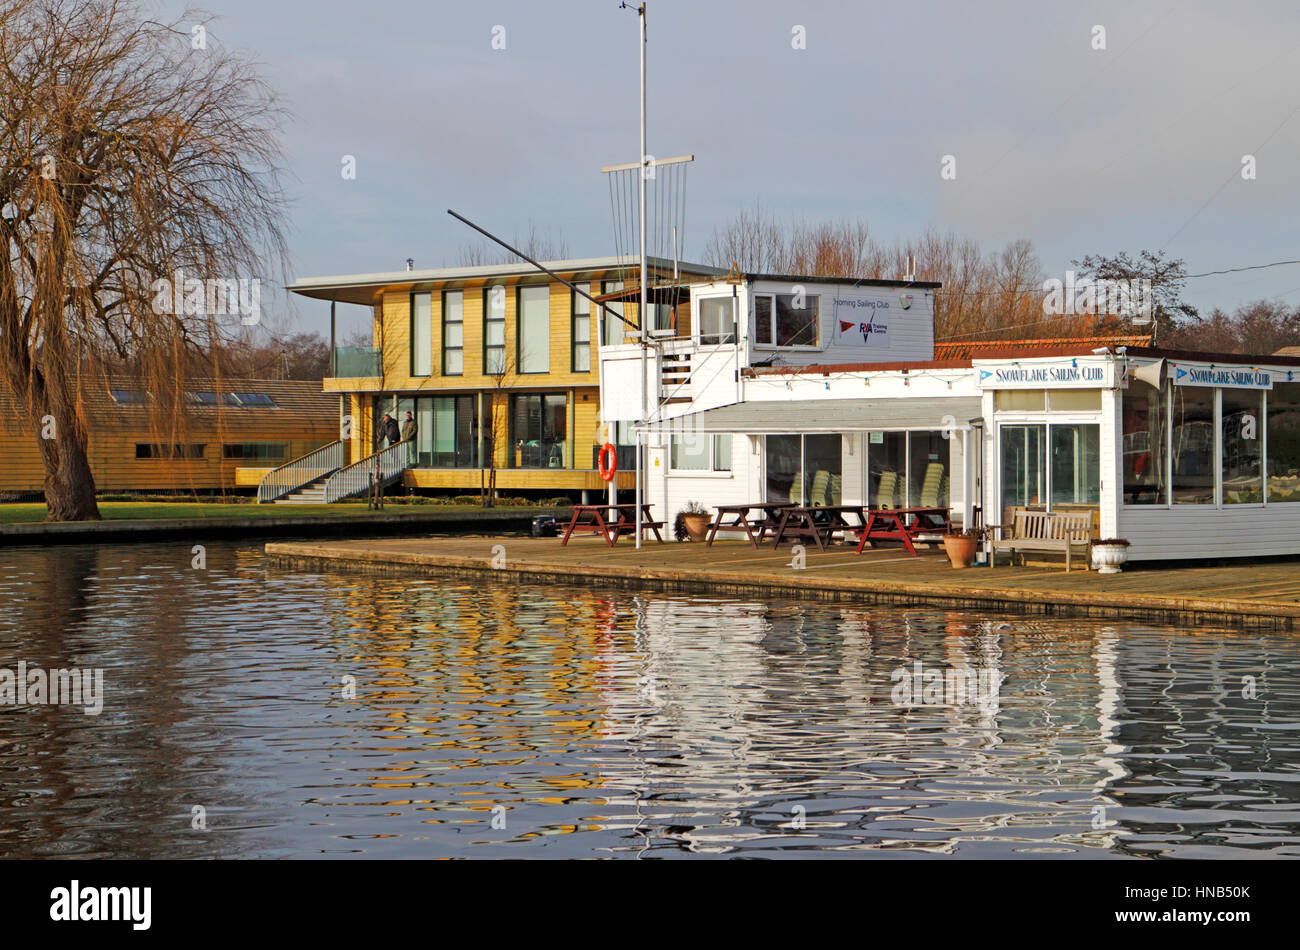 Une vue de l'administration centrale par le club de voile de la rivière Bure à Horning, Norfolk, Angleterre, Royaume-Uni. Banque D'Images